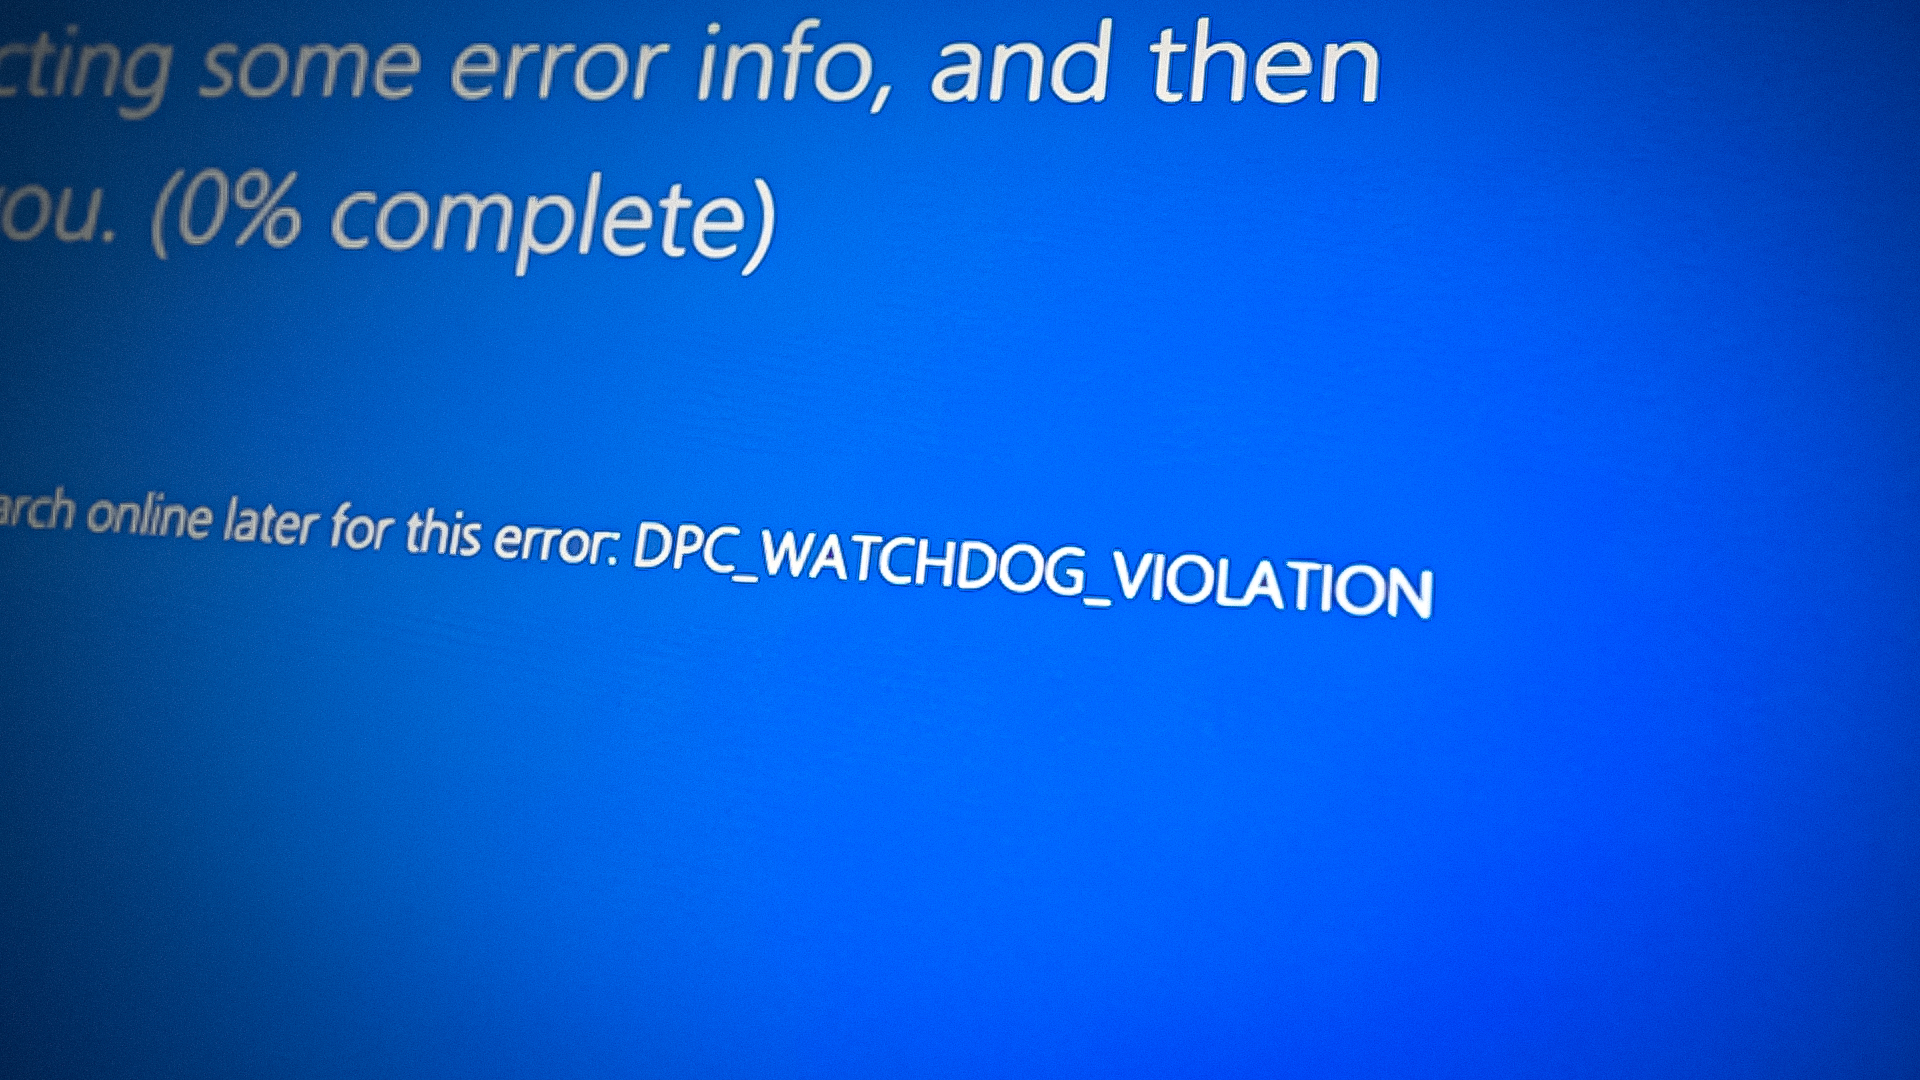 DPC Watchdog Violation BSOD Screen